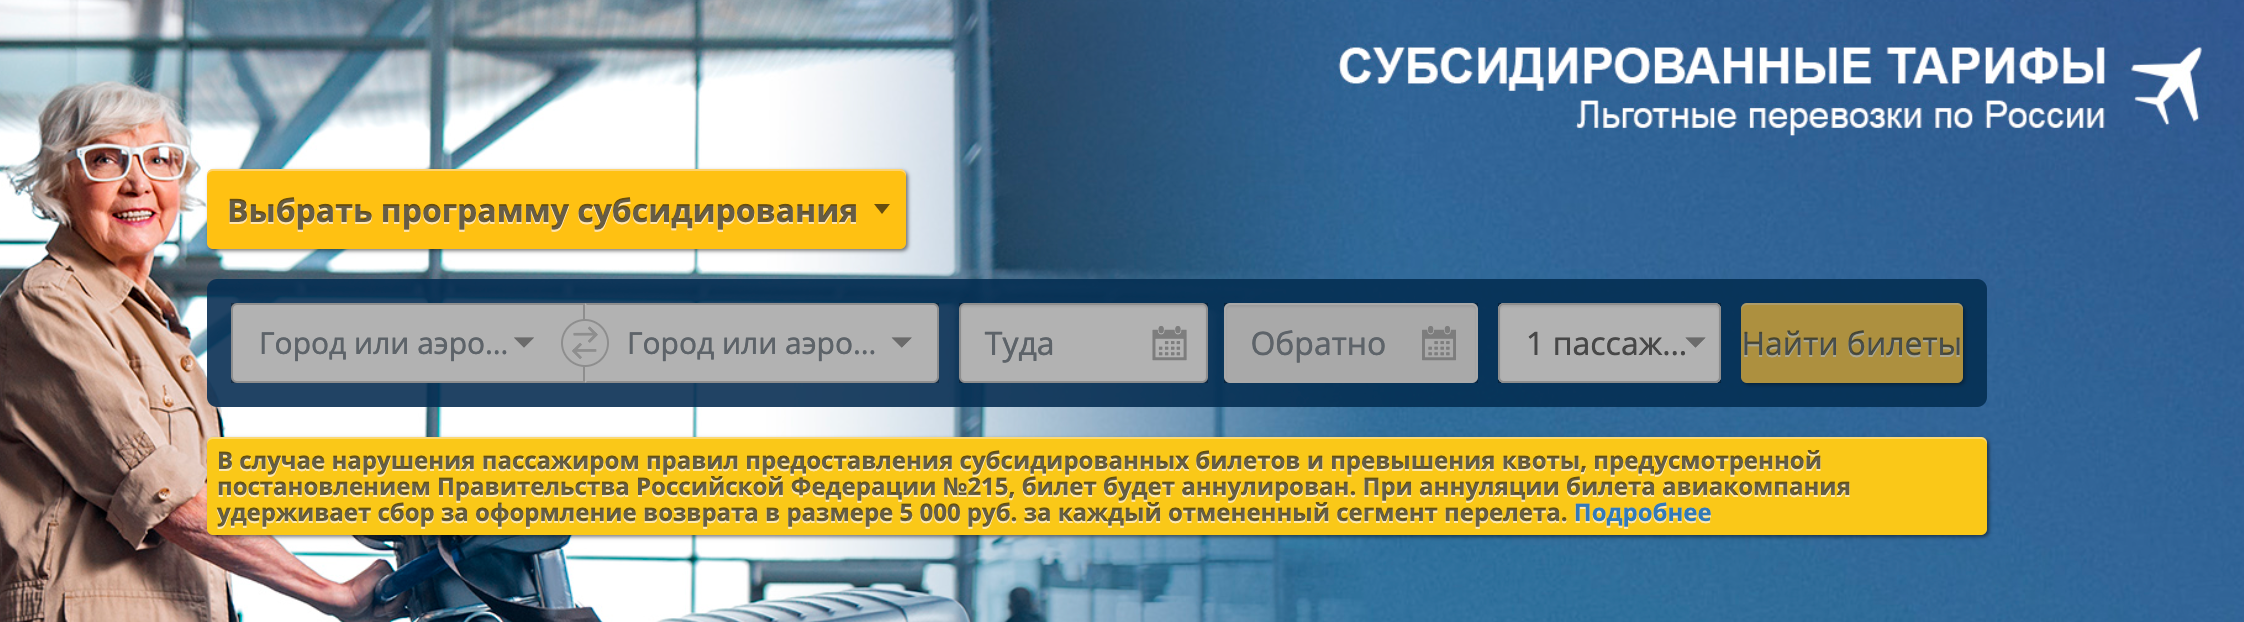 На сайте перевозчика iFly есть вкладка для поиска субсидированных билетов. Источник: iflyltd.ru